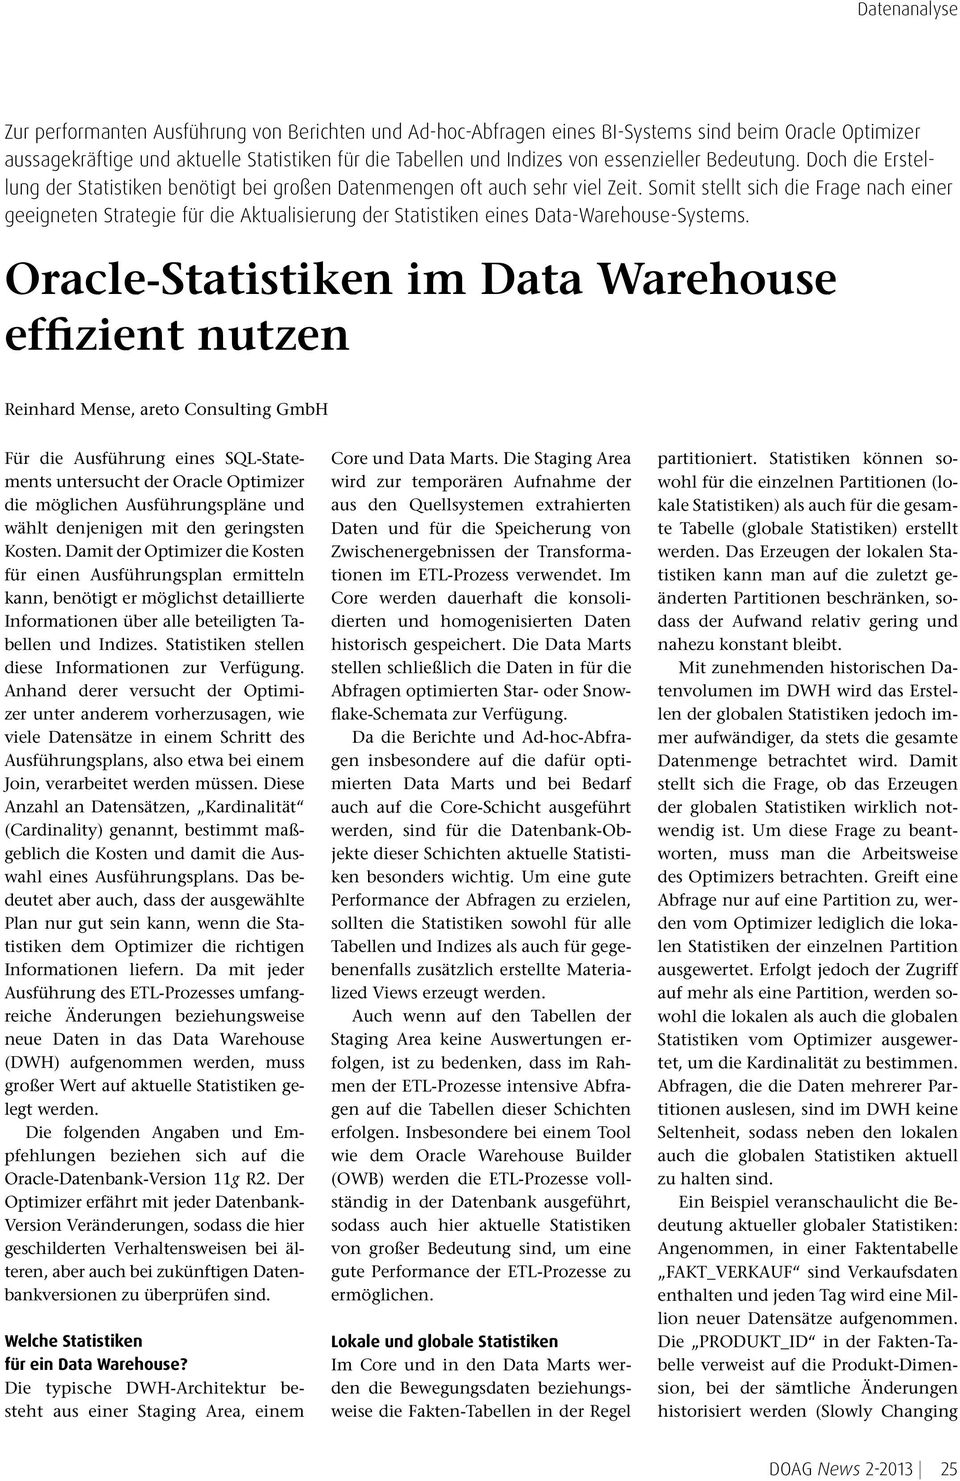 Somit stellt sich die Frage nach einer geeigneten Strategie für die Aktualisierung der Statistiken eines Data-Warehouse-Systems.